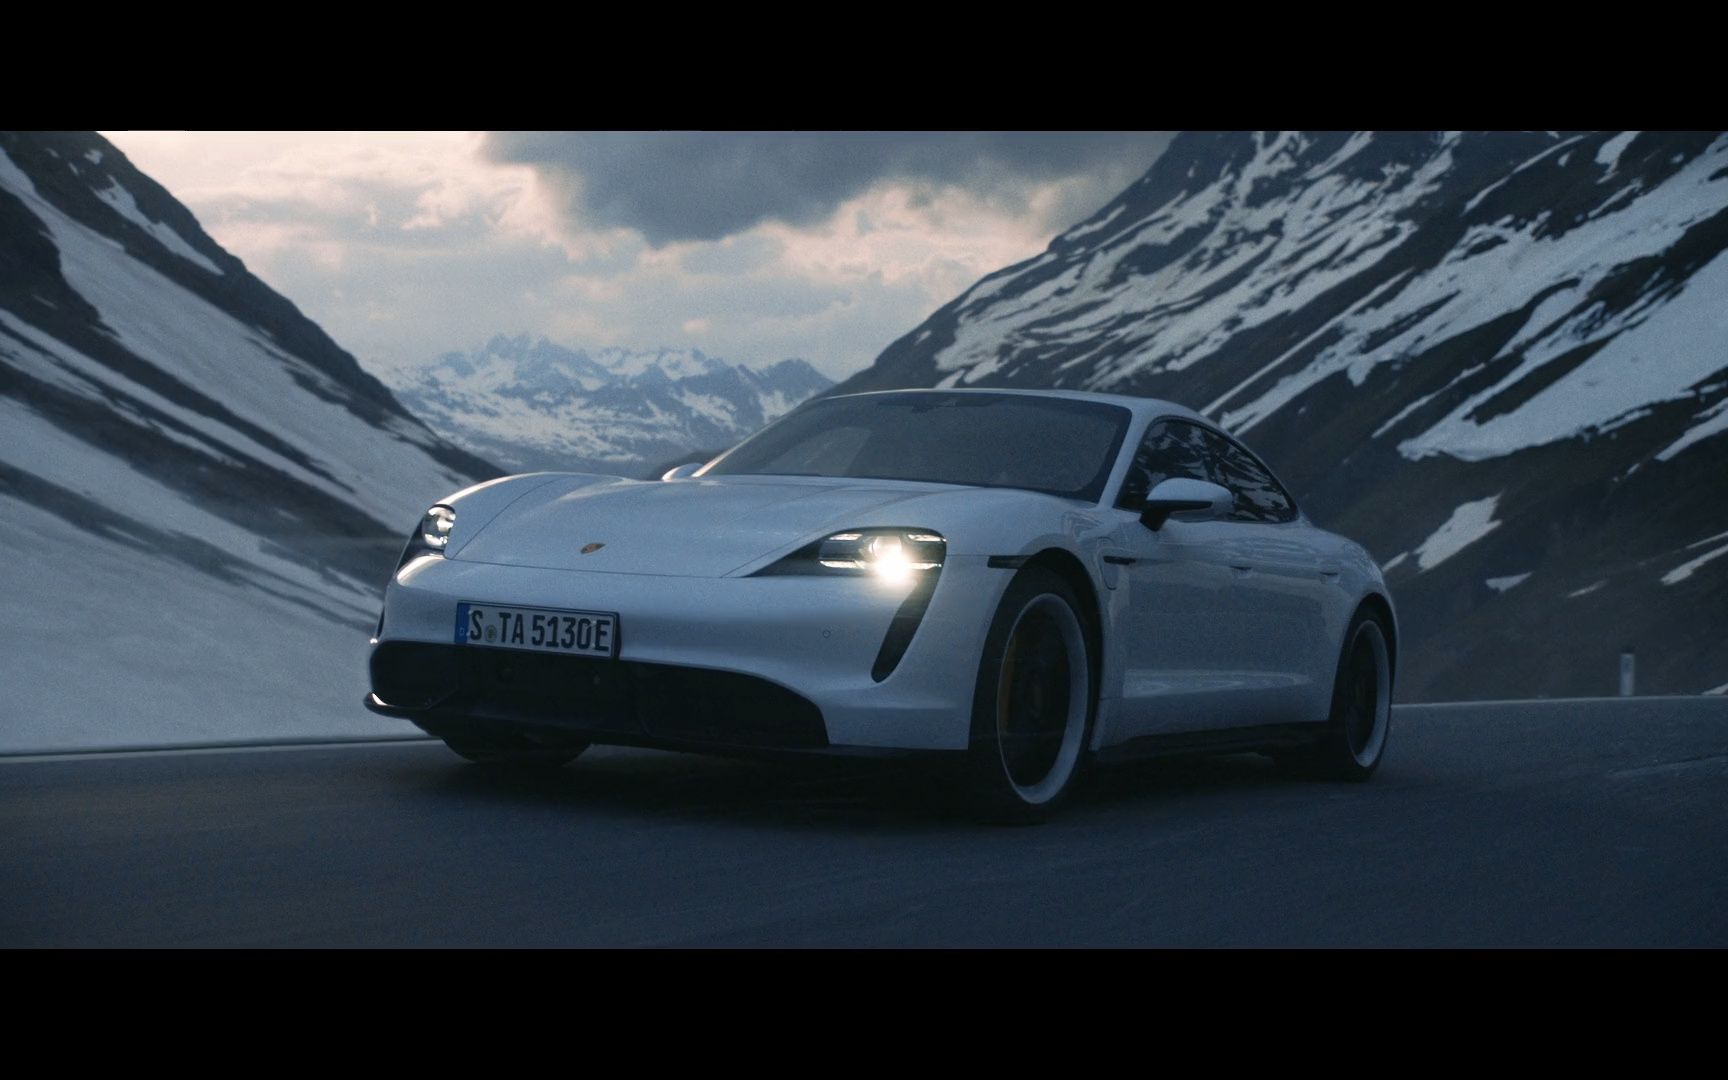 新保时捷纯电超跑Porsche Taycan广告片《速度专家》滑雪冠军联动超跑旁白参考